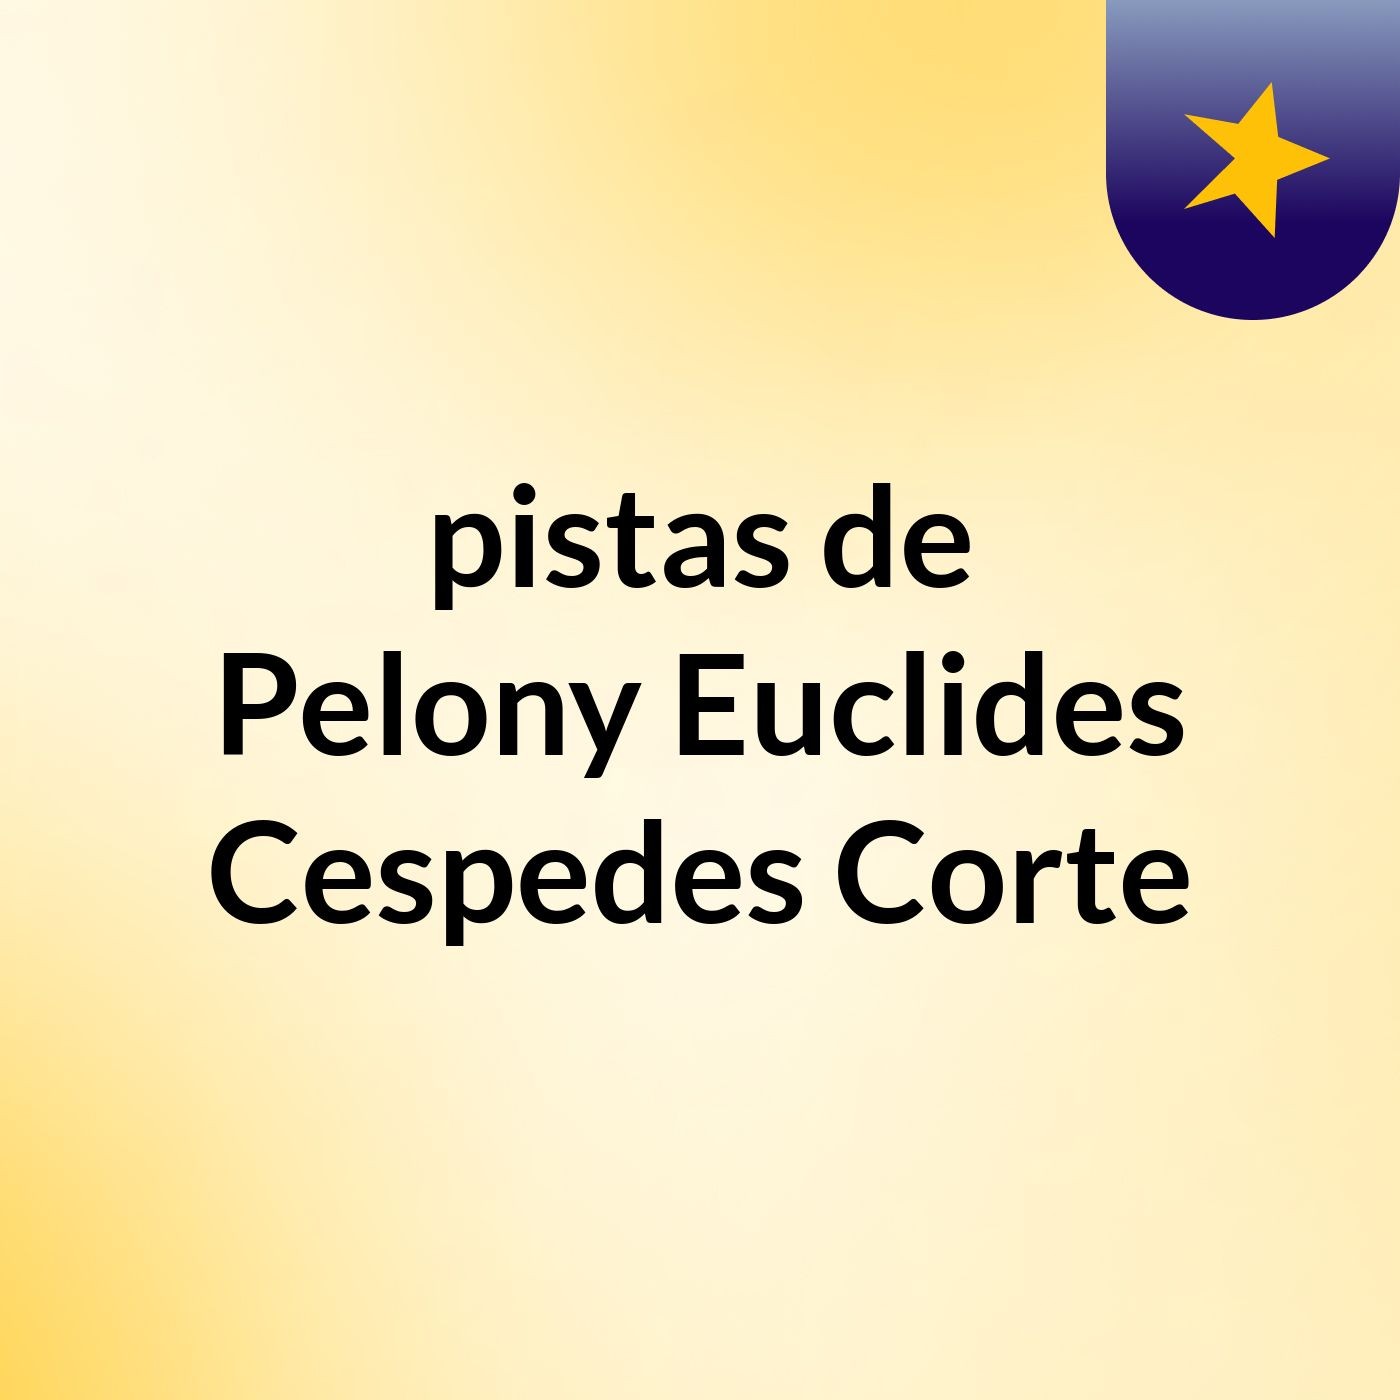 pistas de Pelony Euclides Cespedes Corte